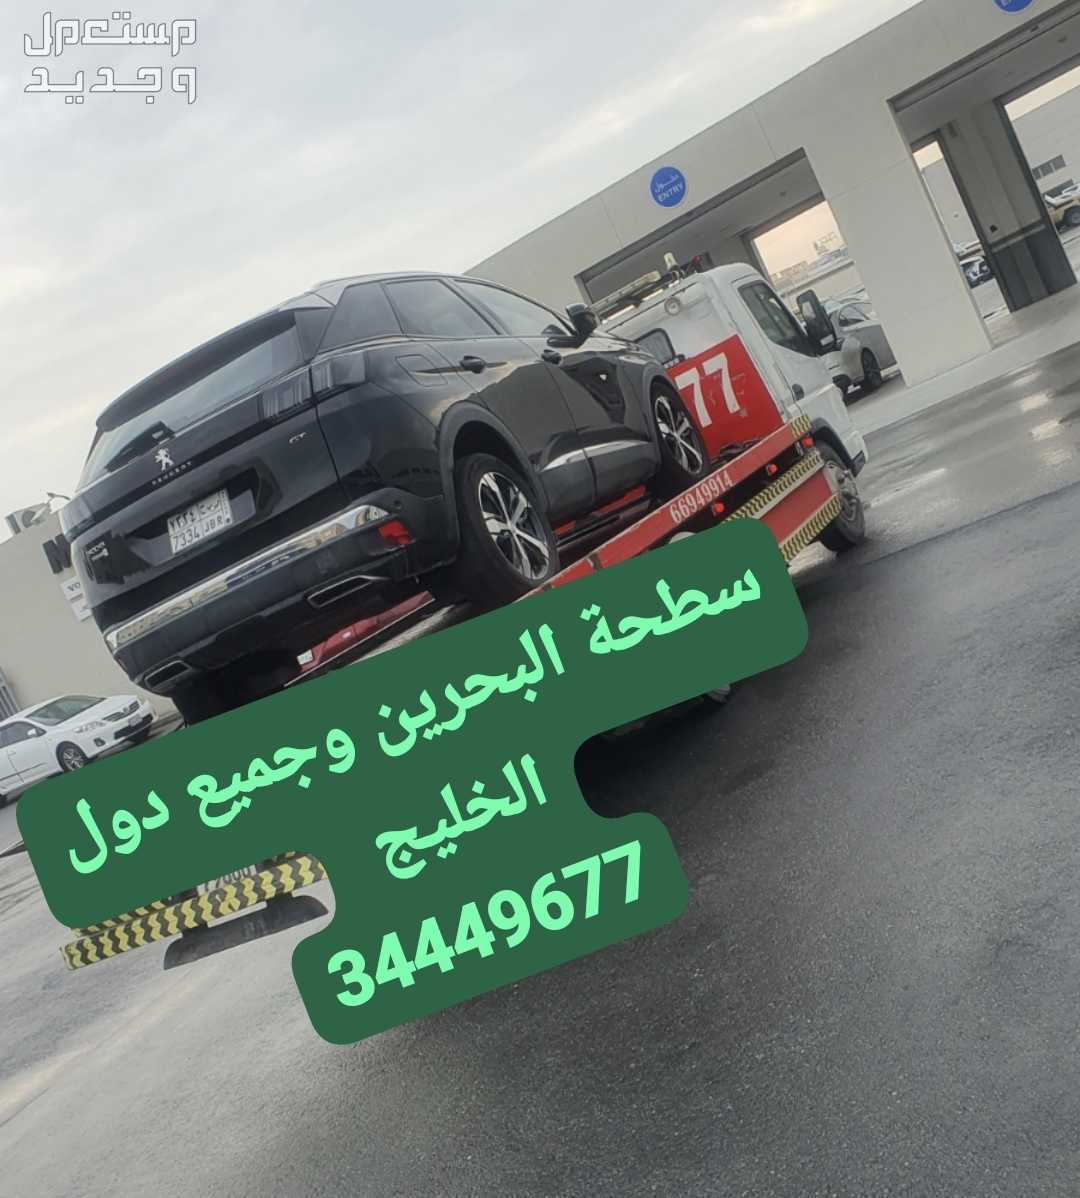 سطحة البحرين إلى السعودية خدمة سحب سيارات رقم سطحه المنامة ونش رافعه البحرين خدمة سحب سيارات